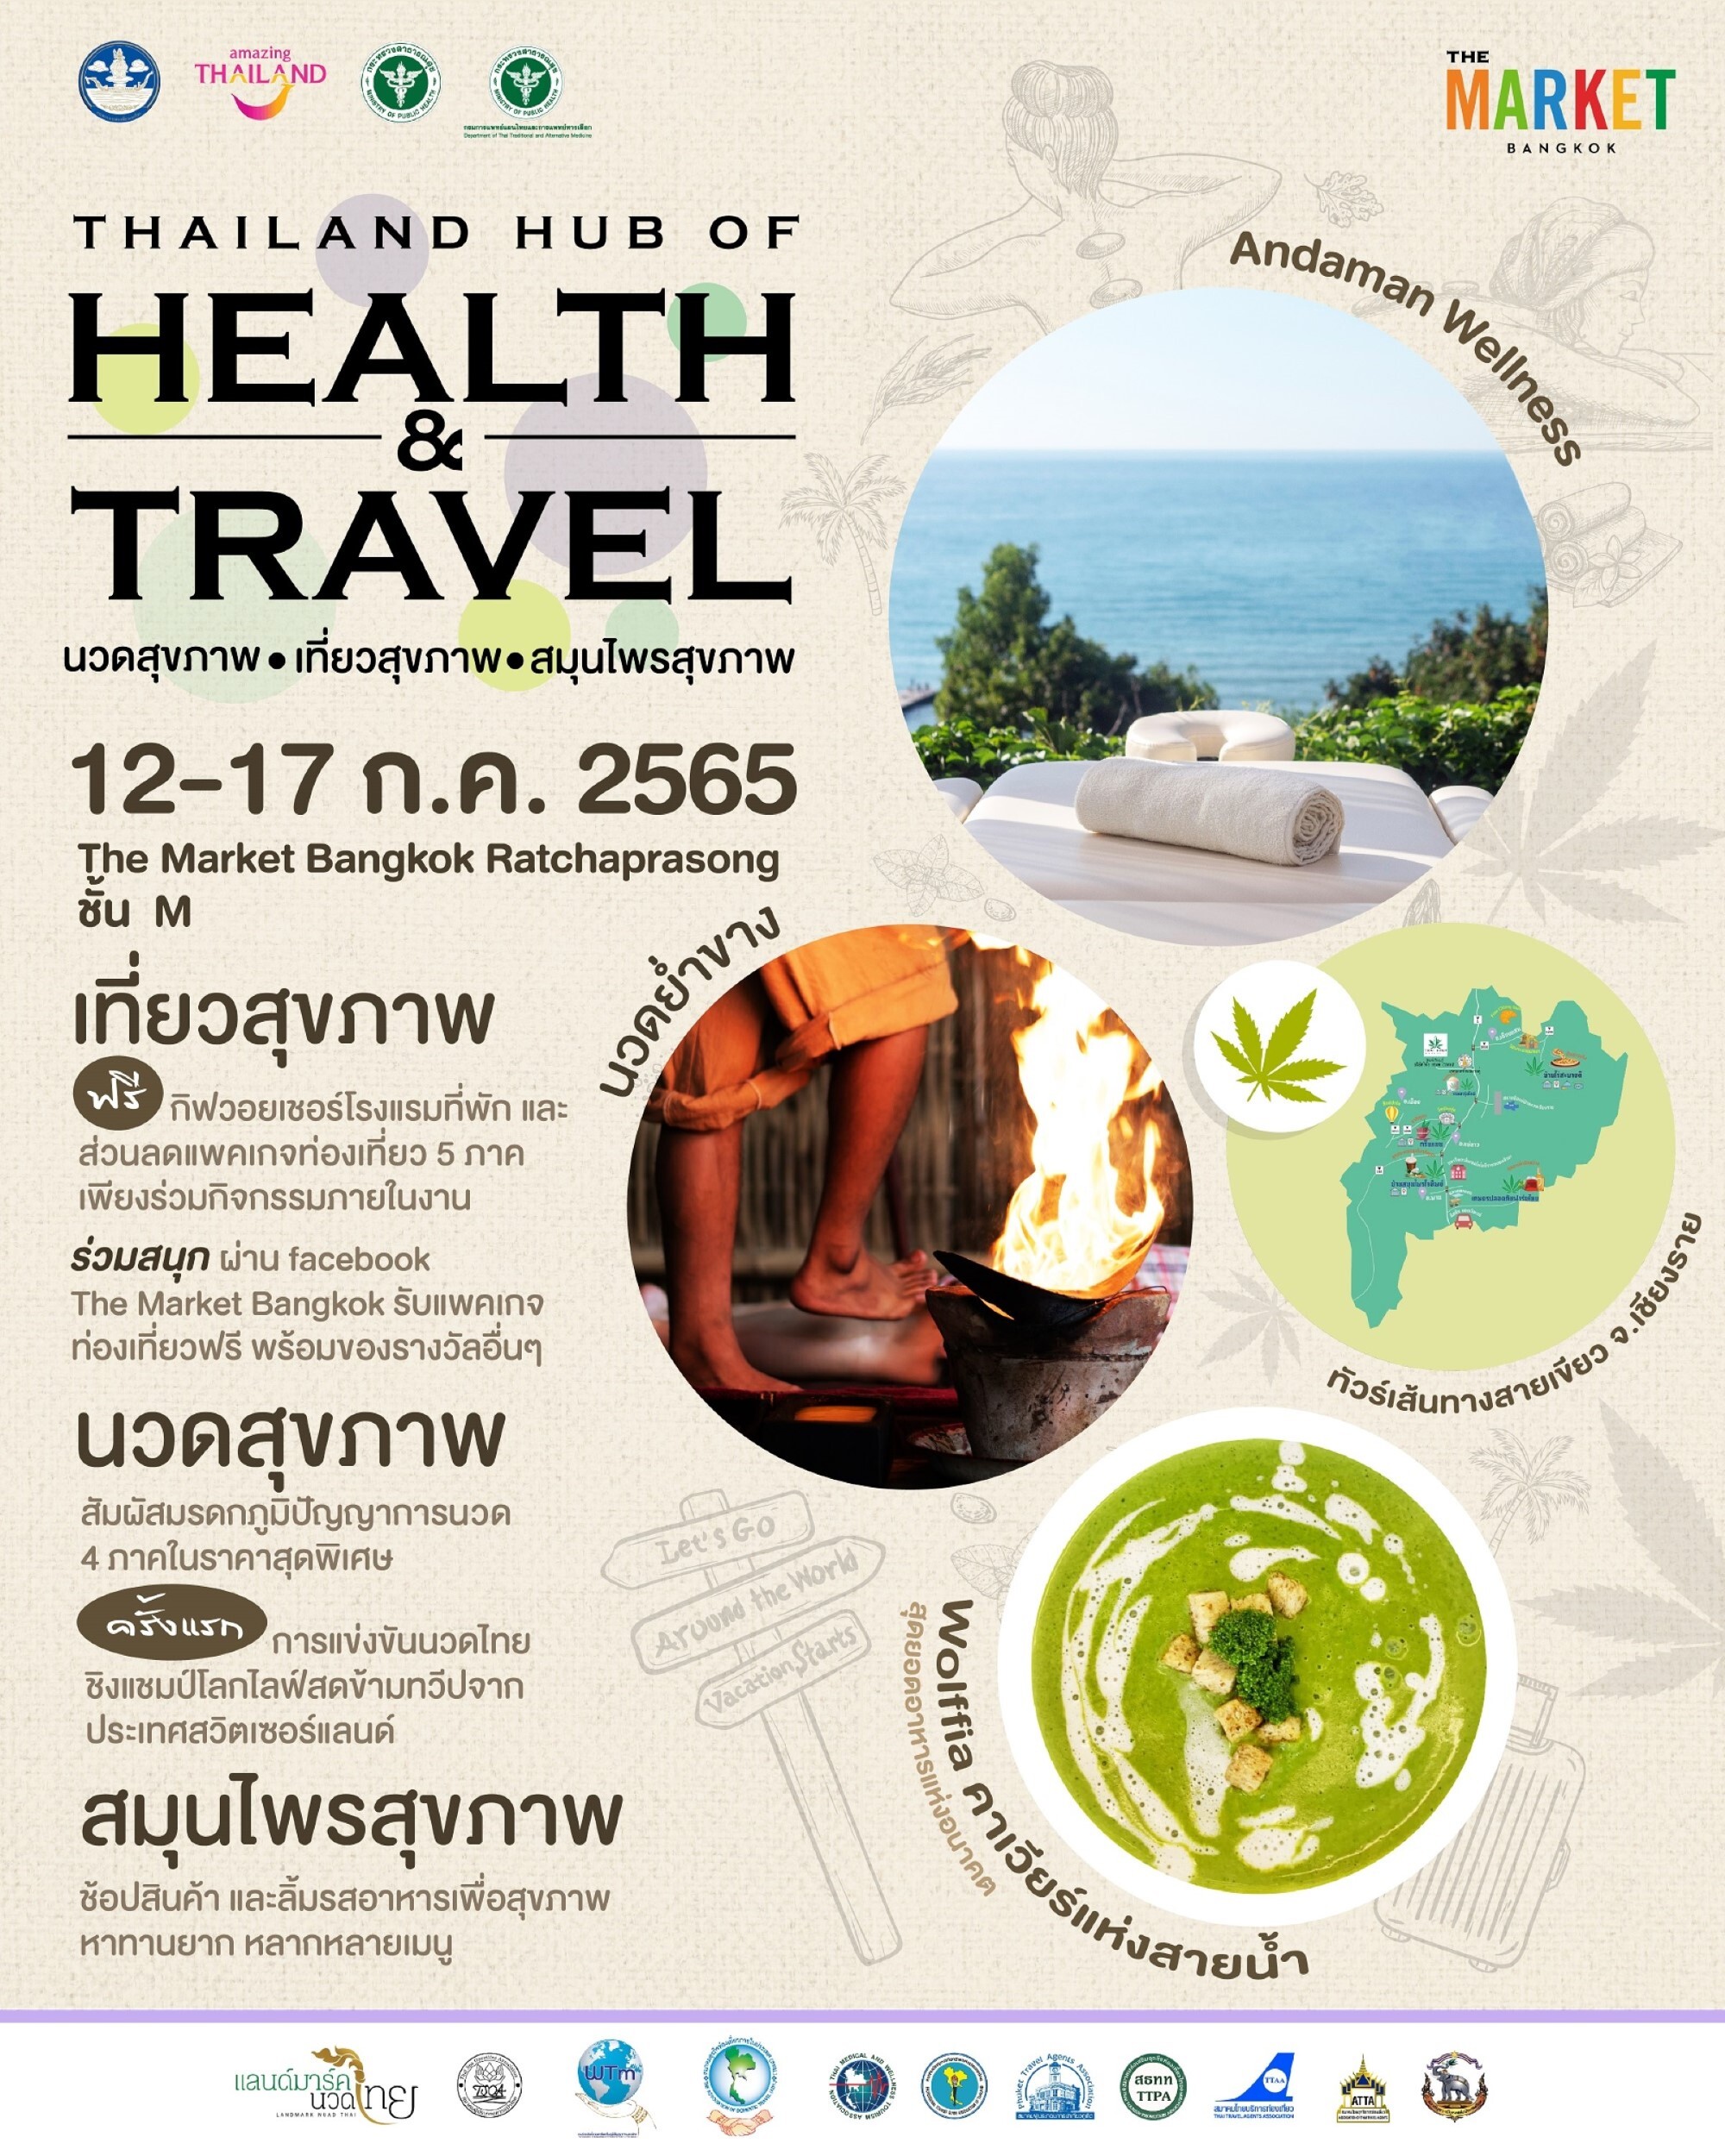 ชวนเที่ยวสุขภาพ นวดสุขภาพ สมุนไพรสุขภาพ สุดยิ่งใหญ่ประจำปี  ในงาน Thailand Hub of Health & Travel  ณ ศูนย์การค้า เดอะ มาร์เก็ต แบงคอก (ราชประสงค์) ชั้น M วันที่ 12-17 ก.ค. 65